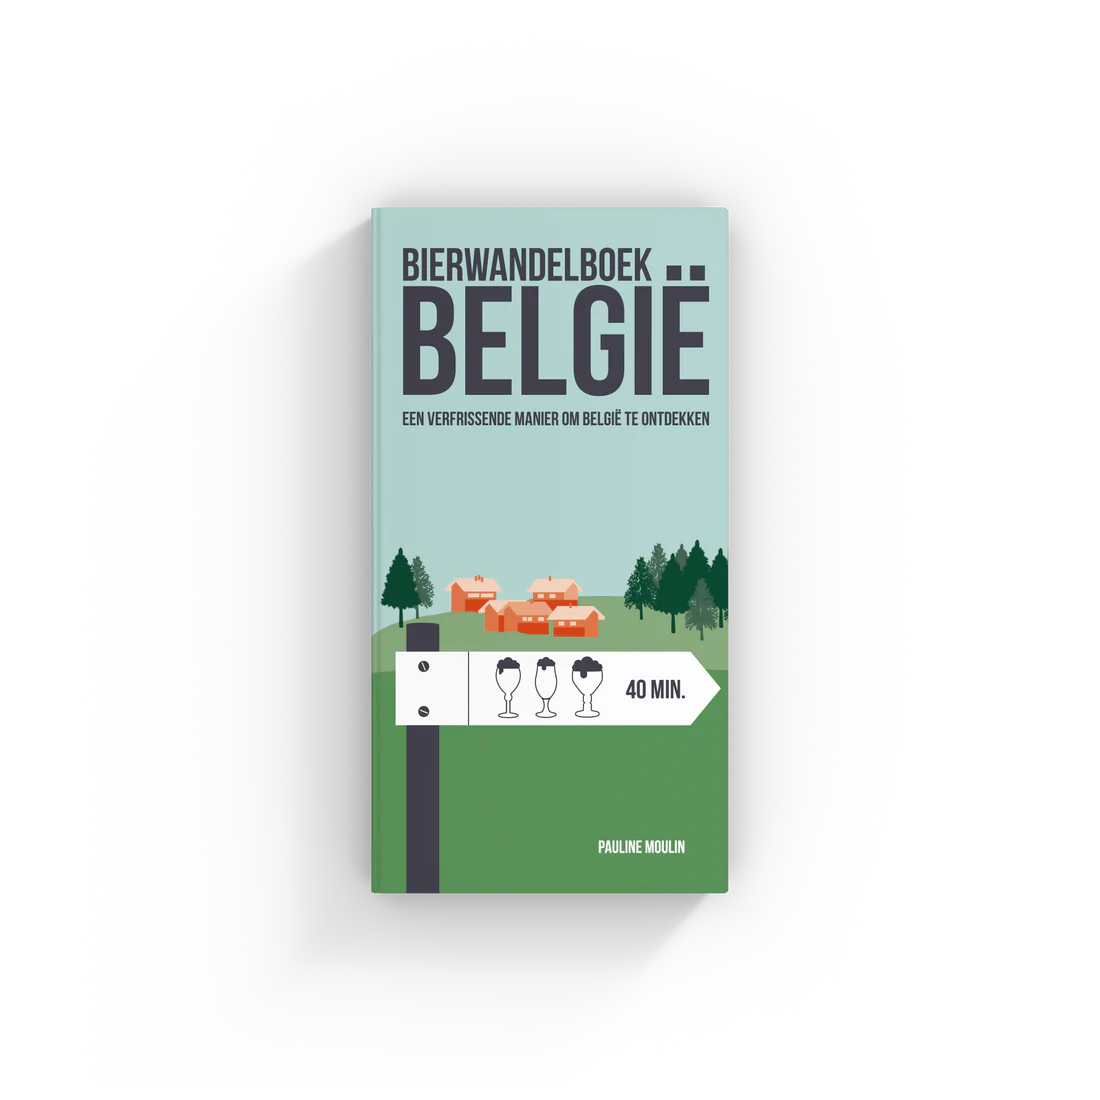 Bierwandelboek België - Een verfrissende manier om België te ontdekken | Luster